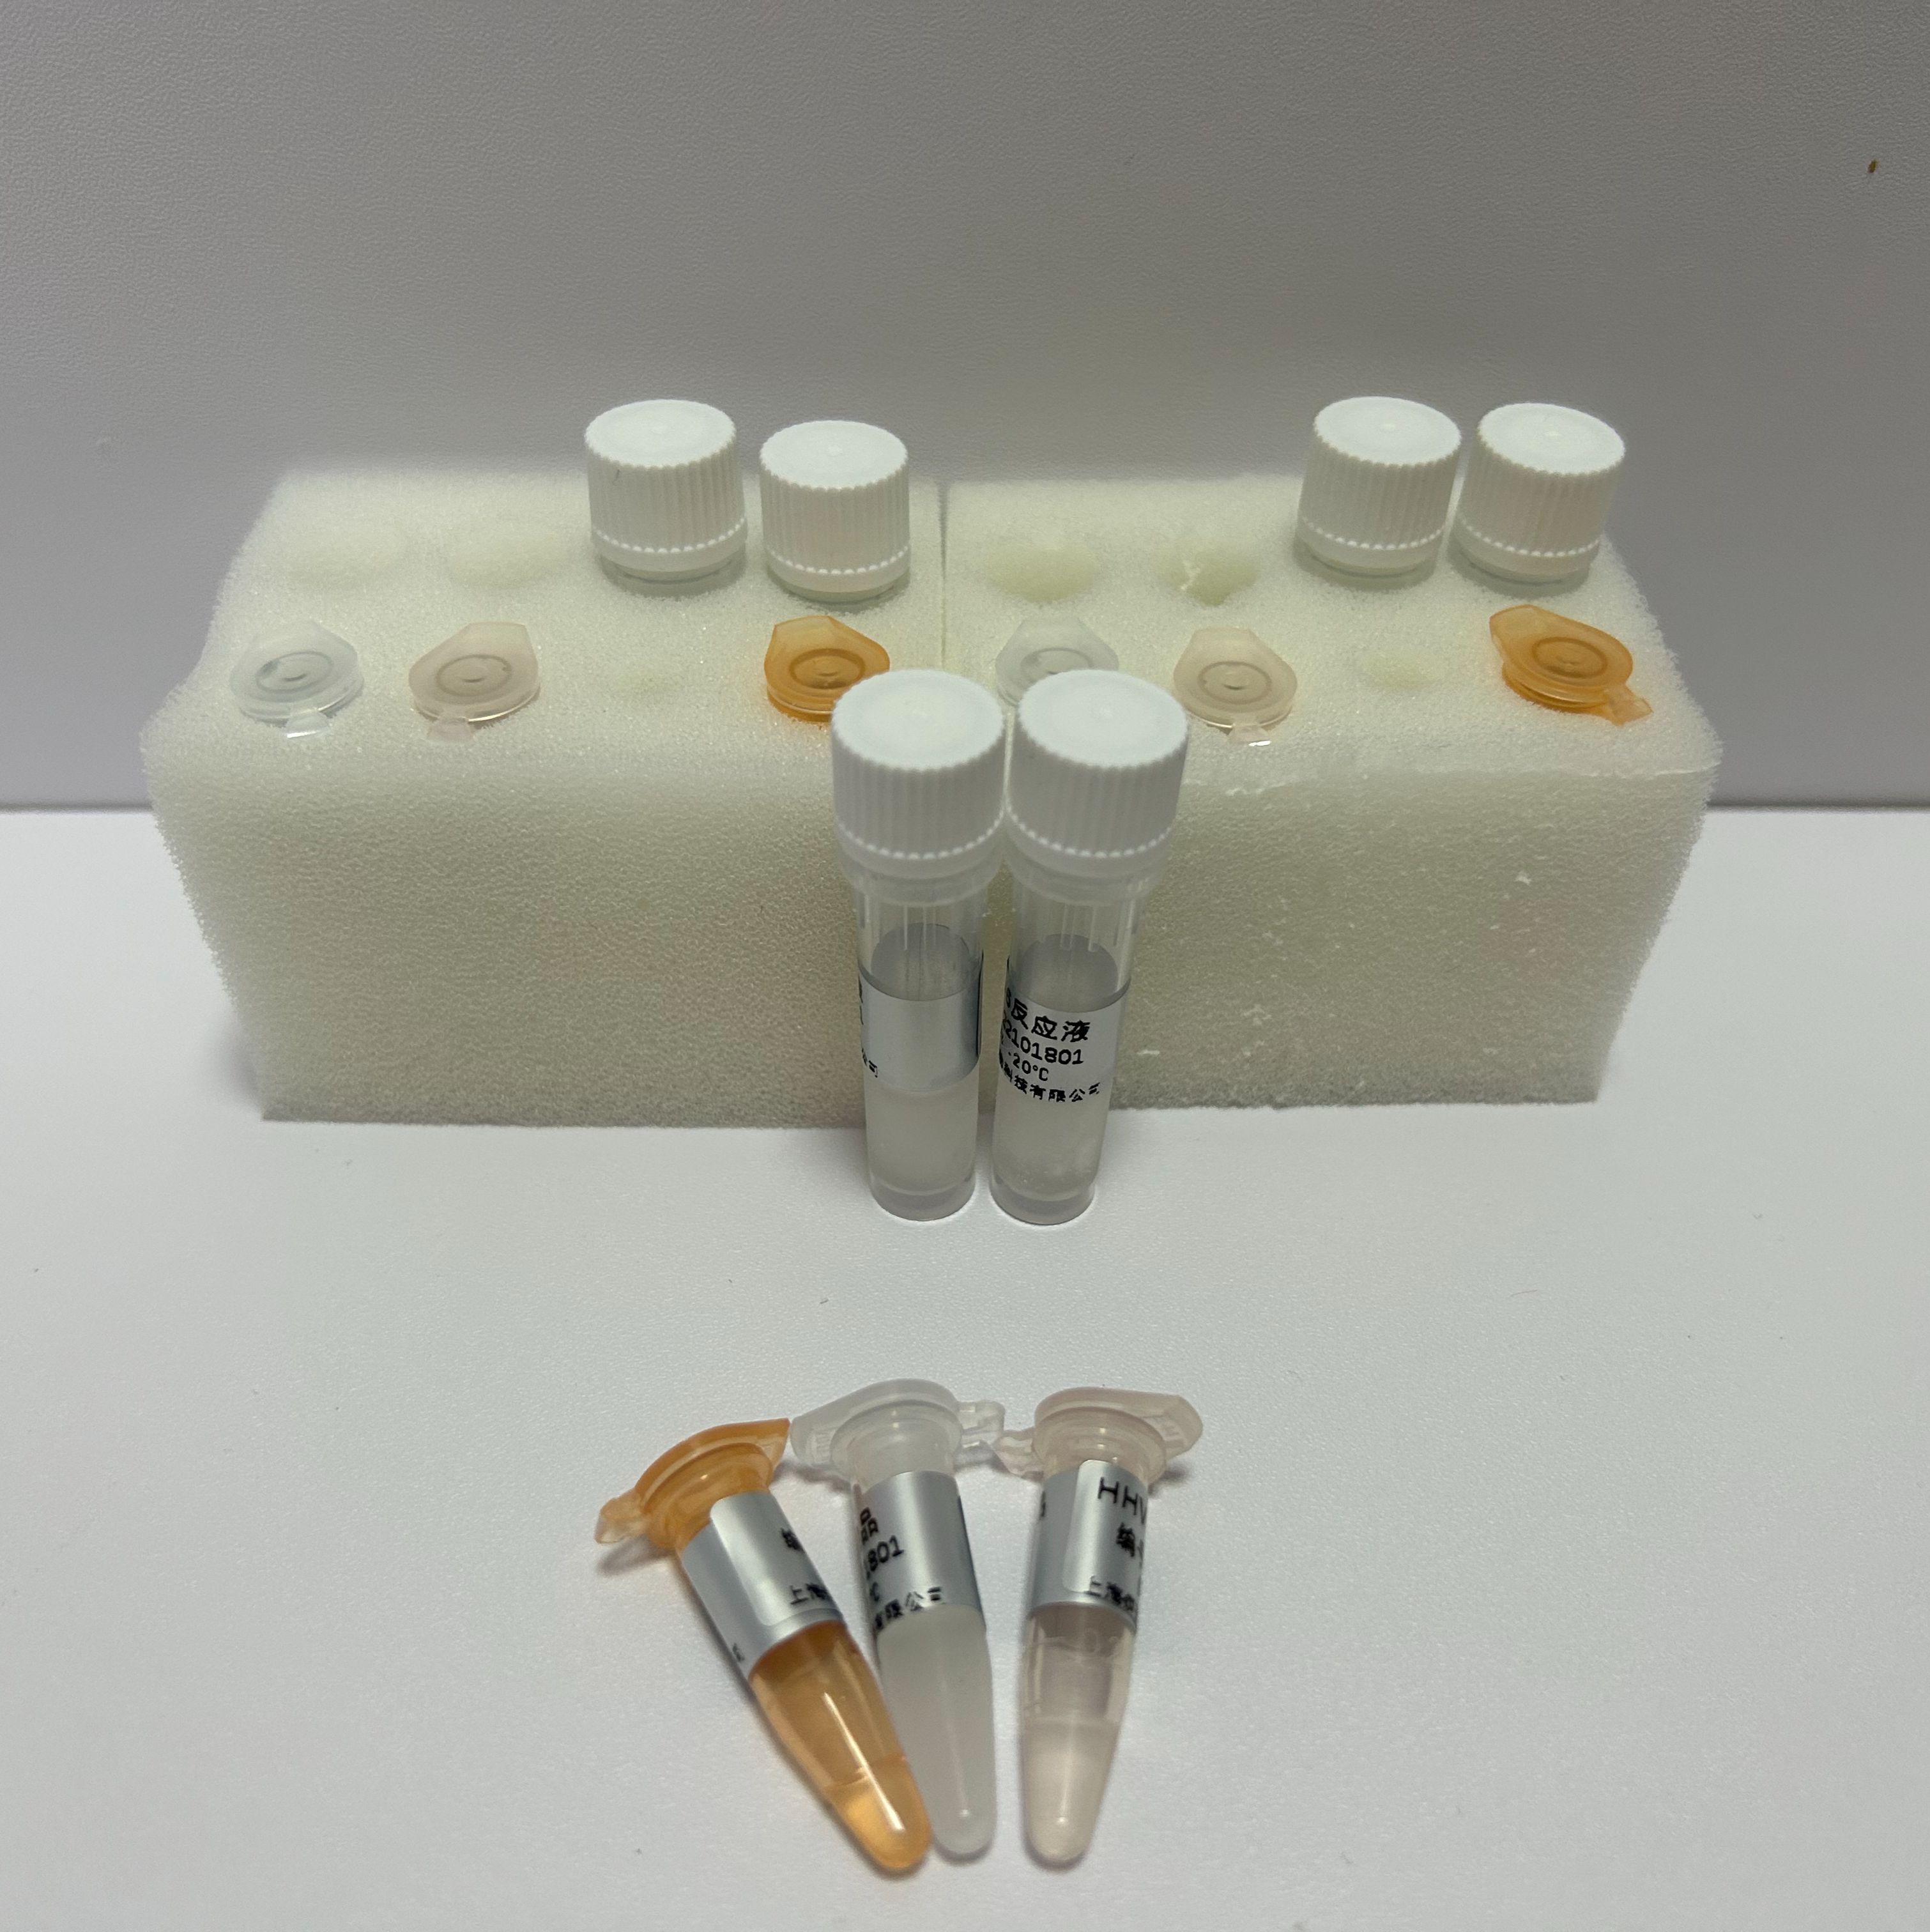 人腺病毒D53型探针法荧光定量PCR试剂盒